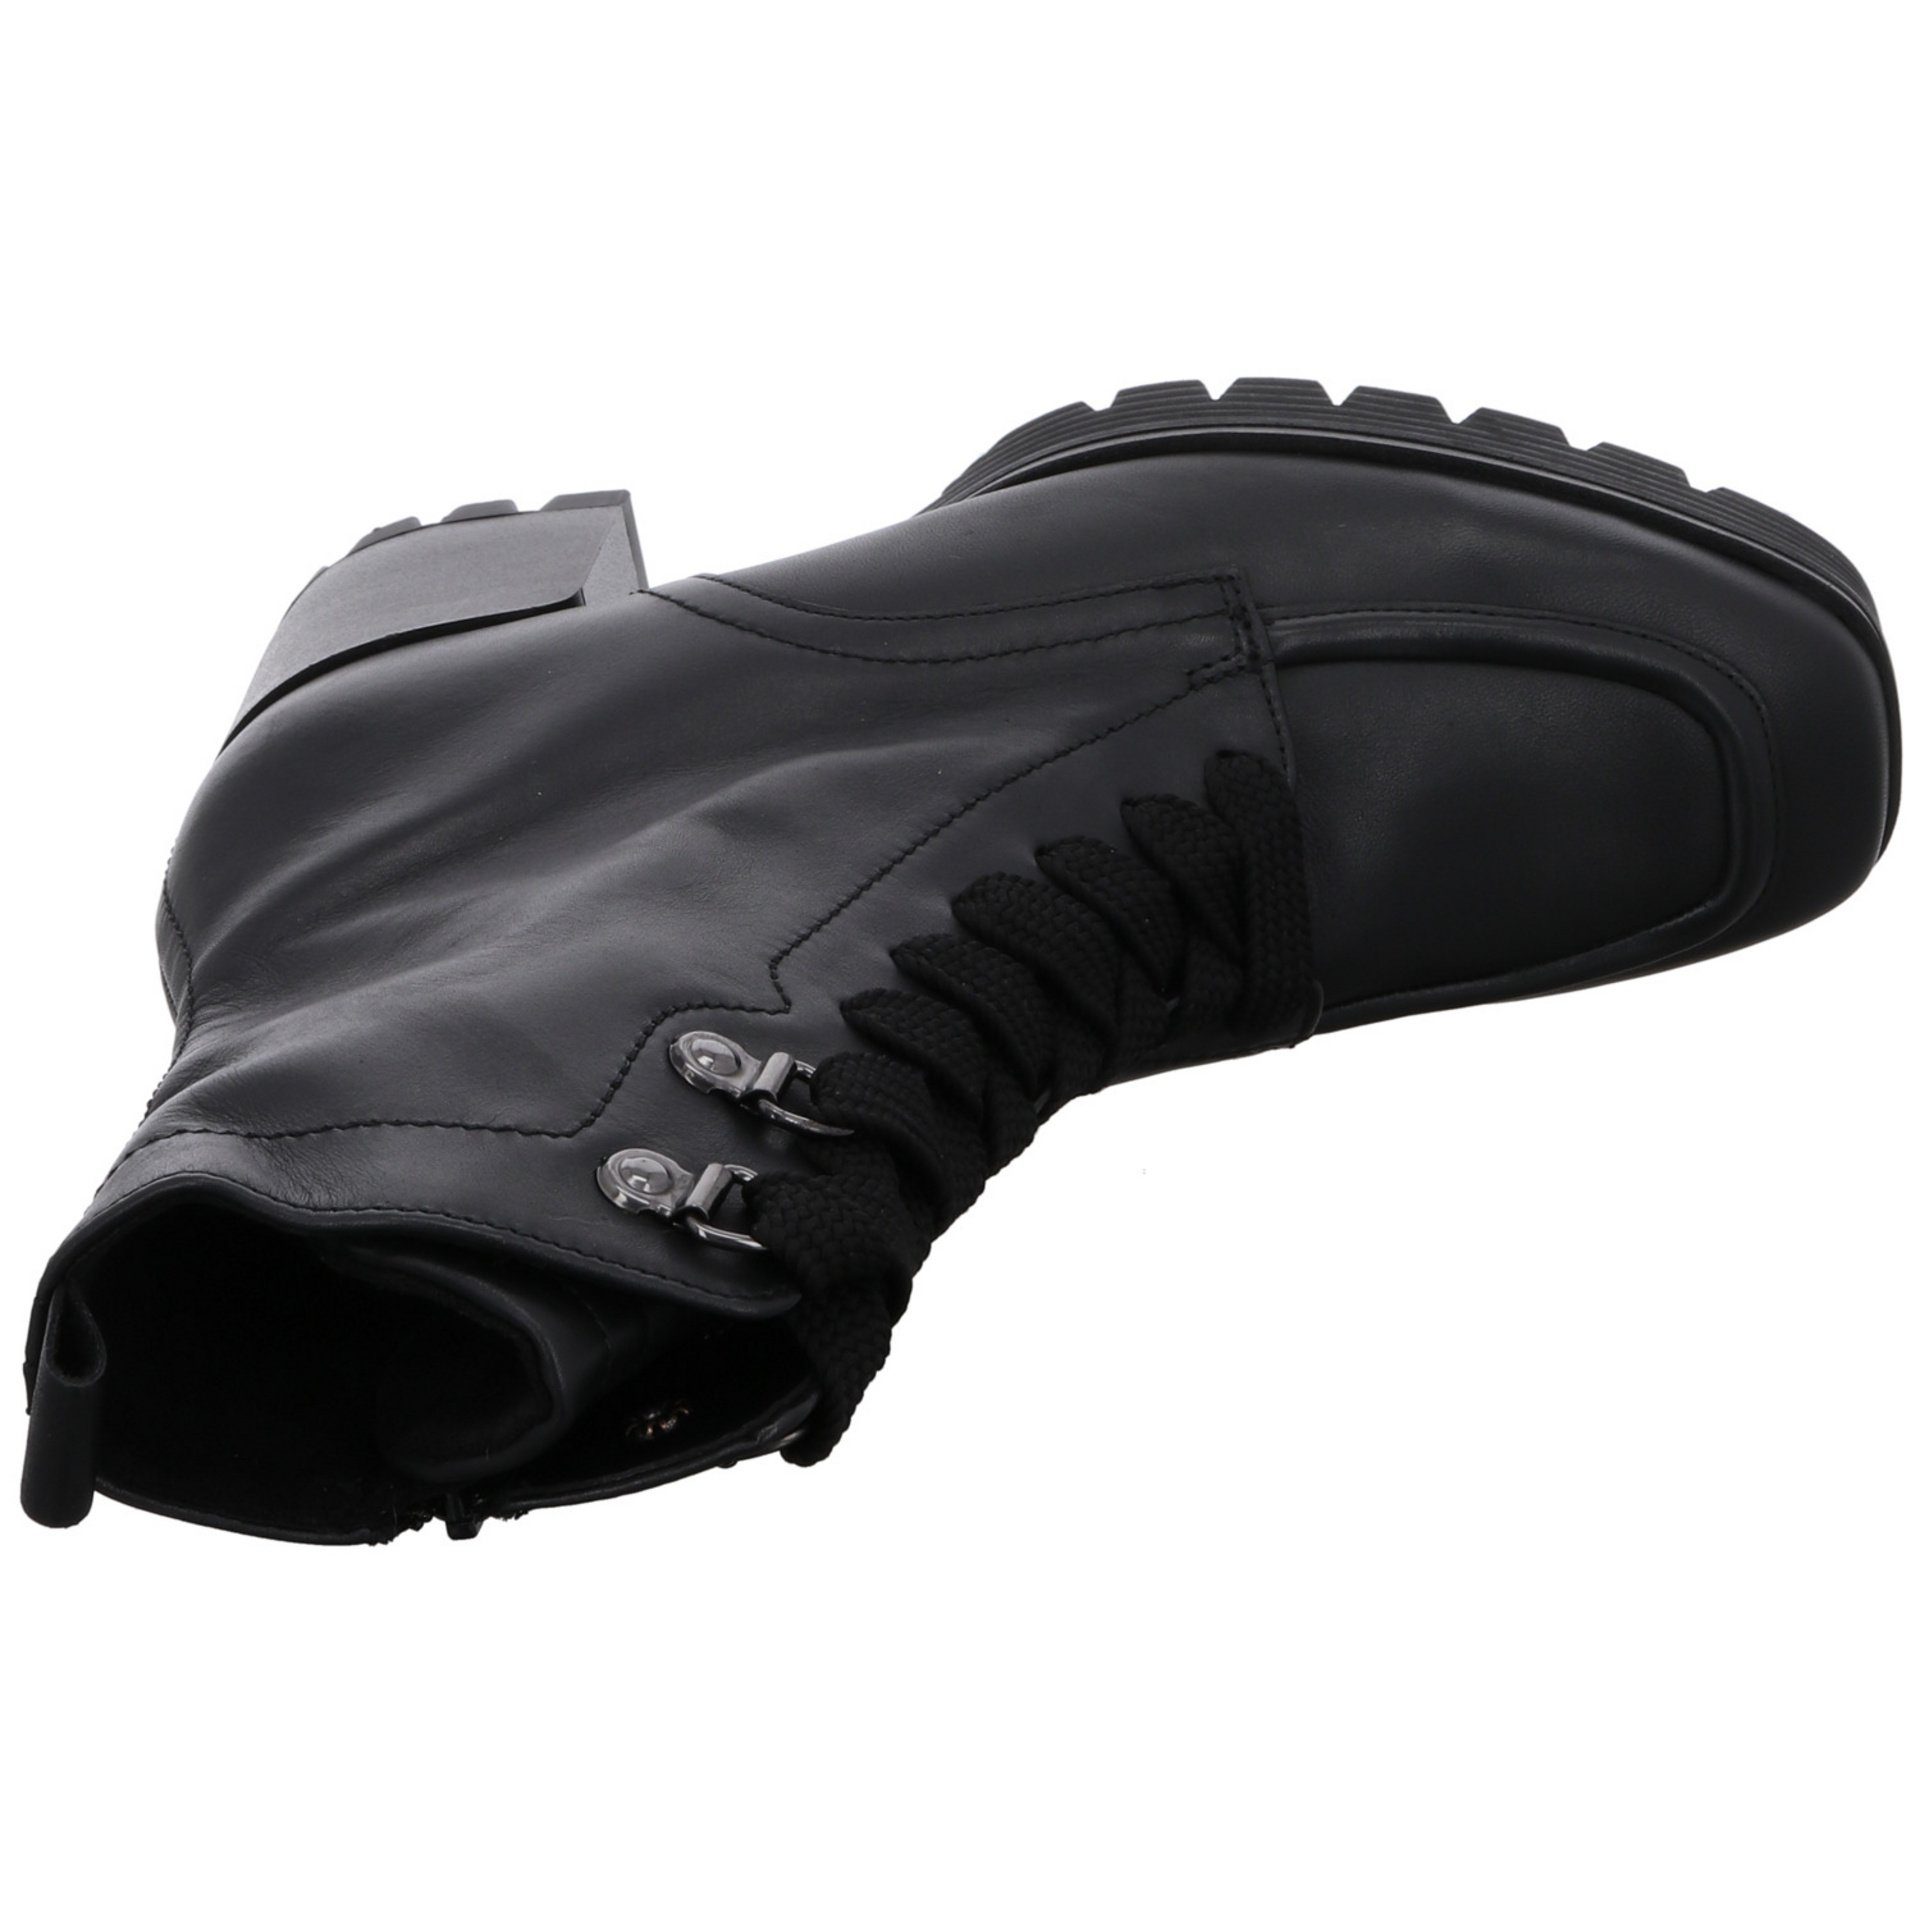 Gabor Damen Stiefeletten Veloursleder schwarz (Micro) Schnürstiefelette Schuhe Schnürstiefelette